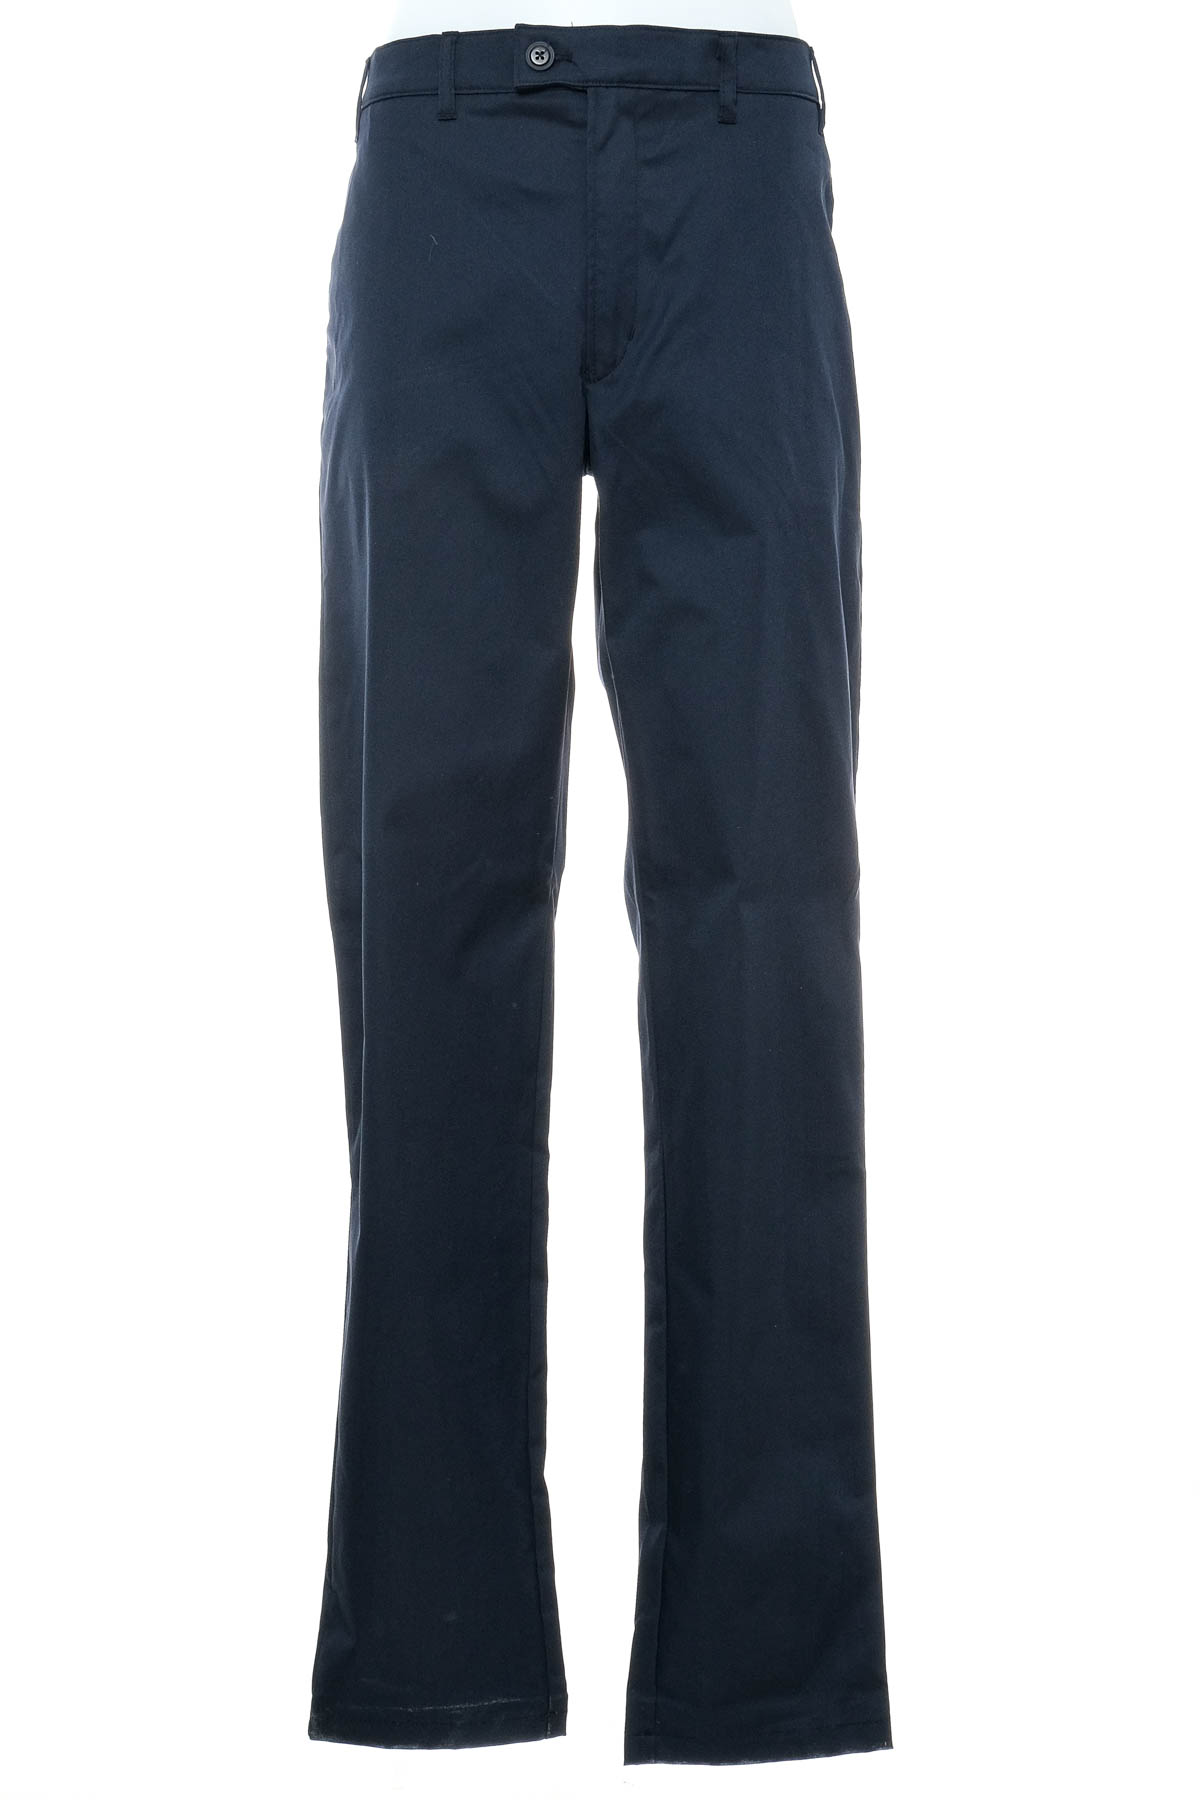 Men's trousers - GREIFF - 0